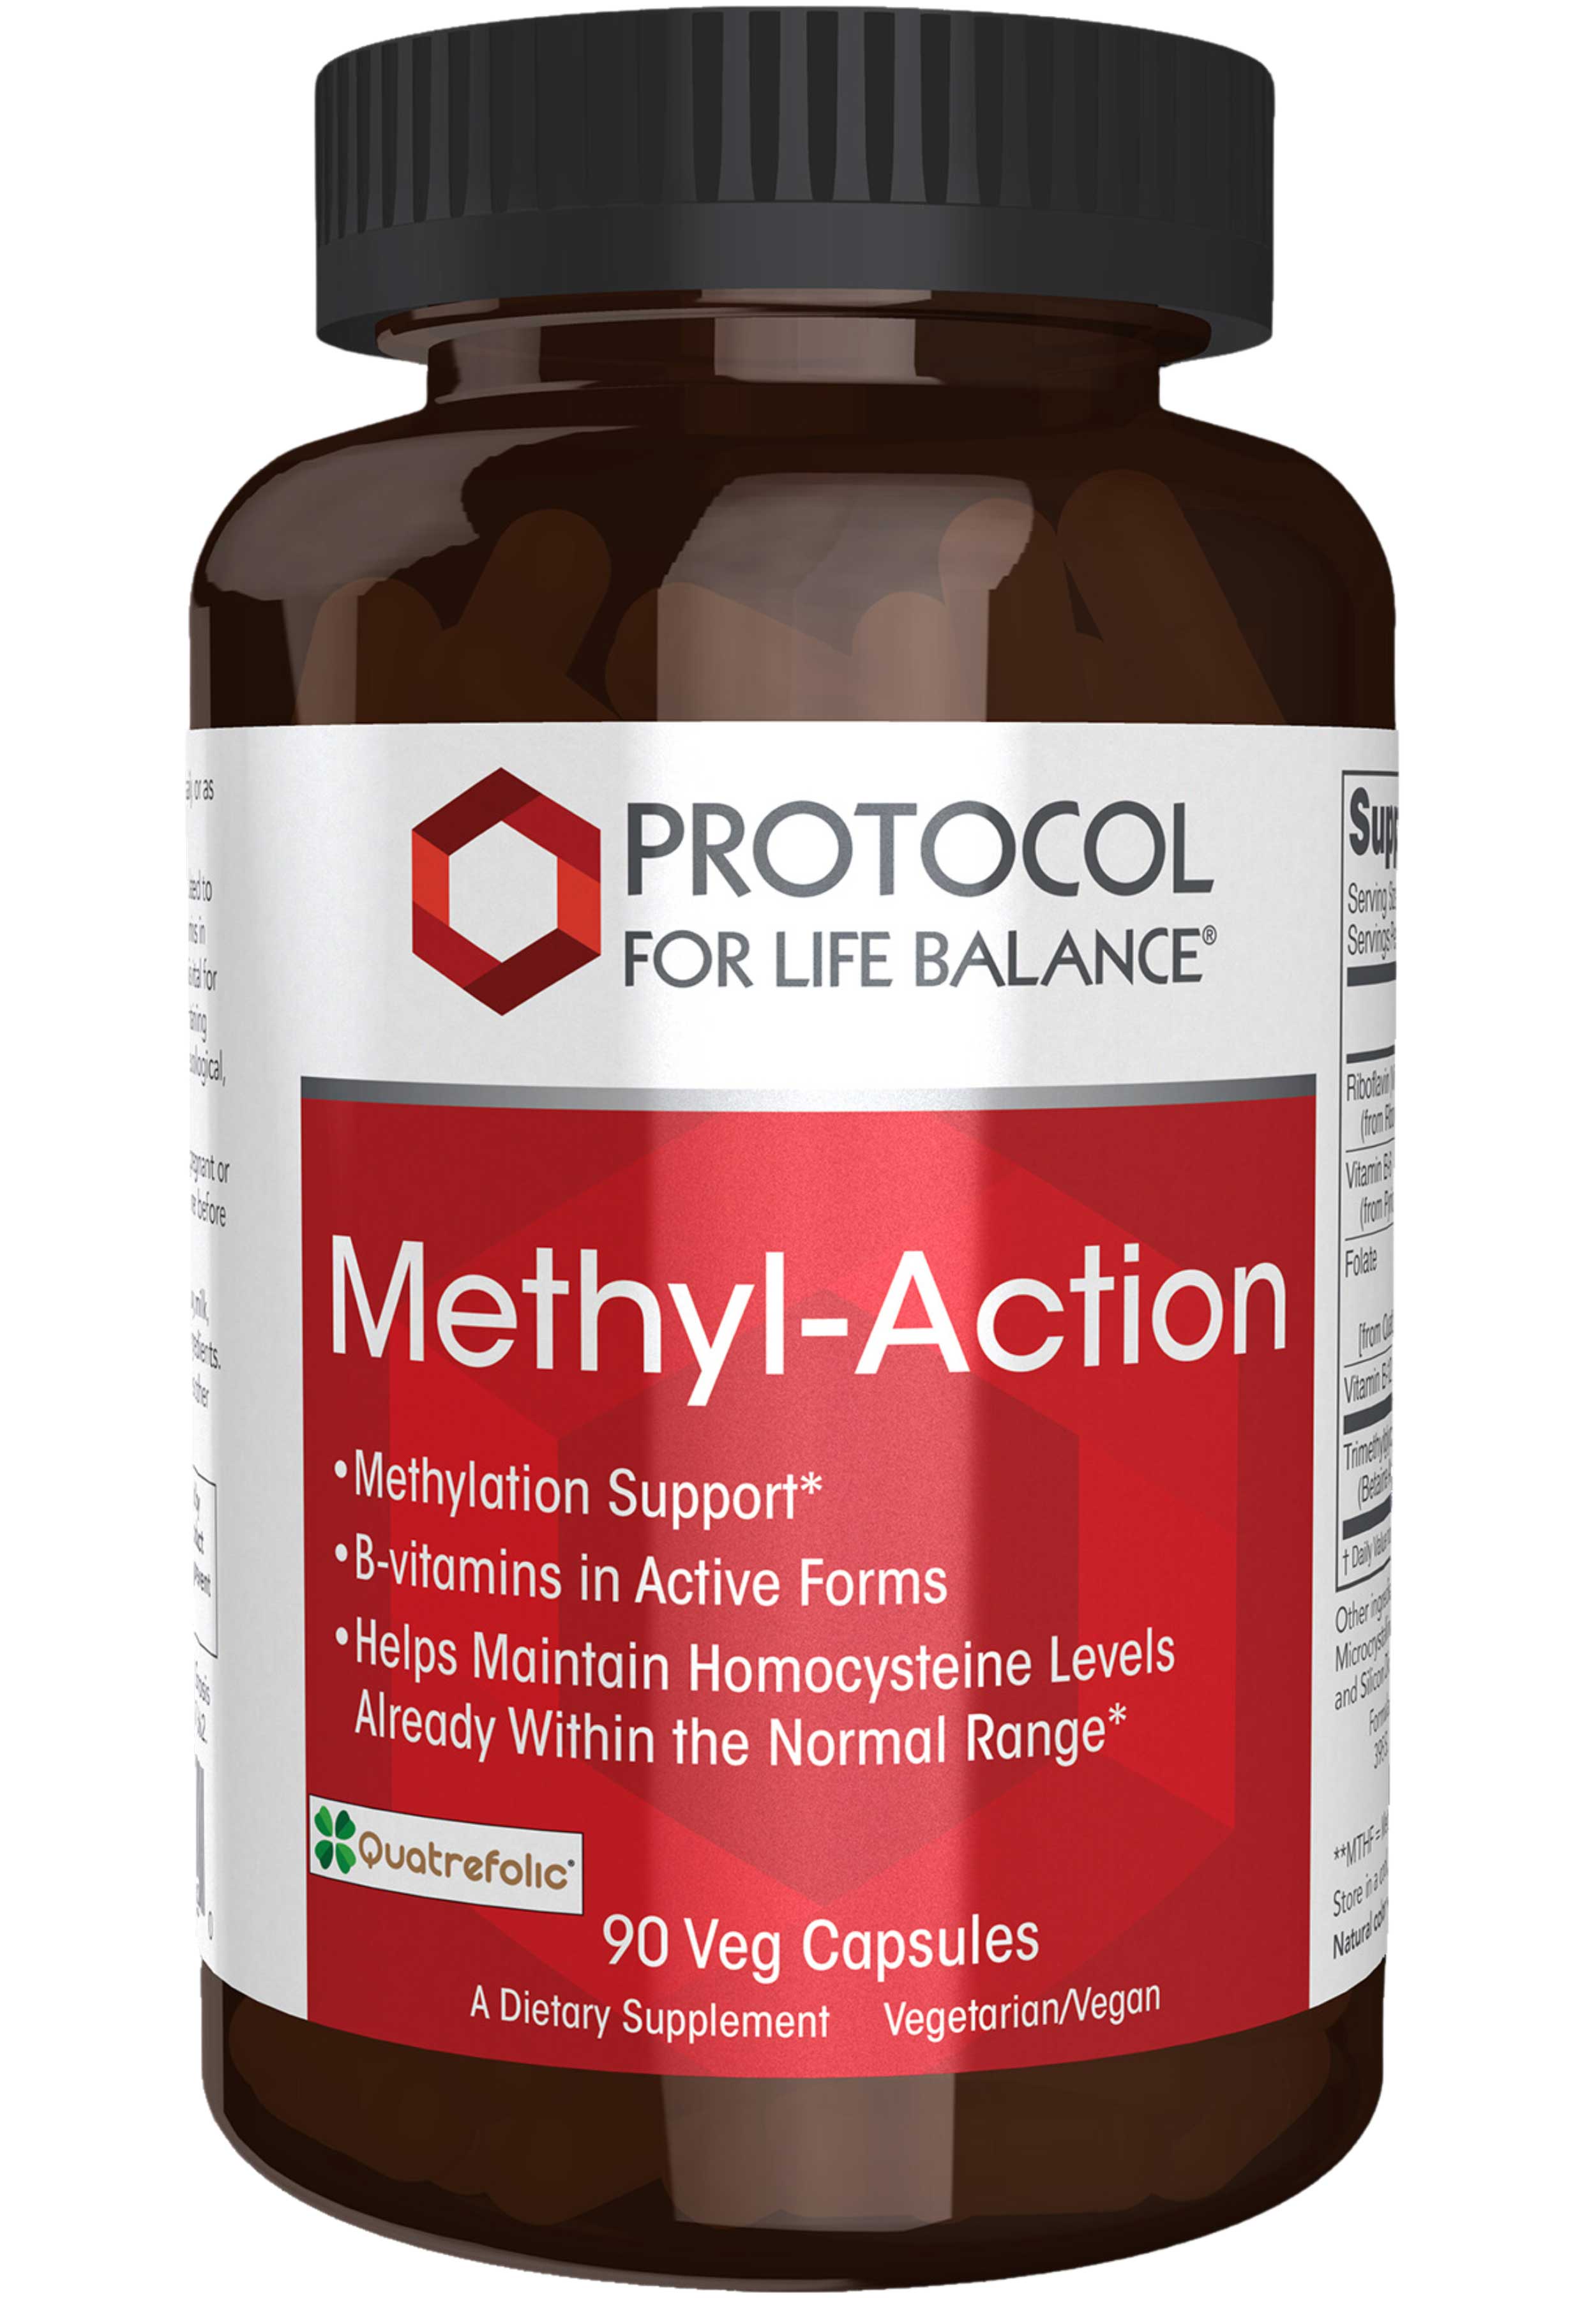 Protocol for Life Balance Methyl-Action